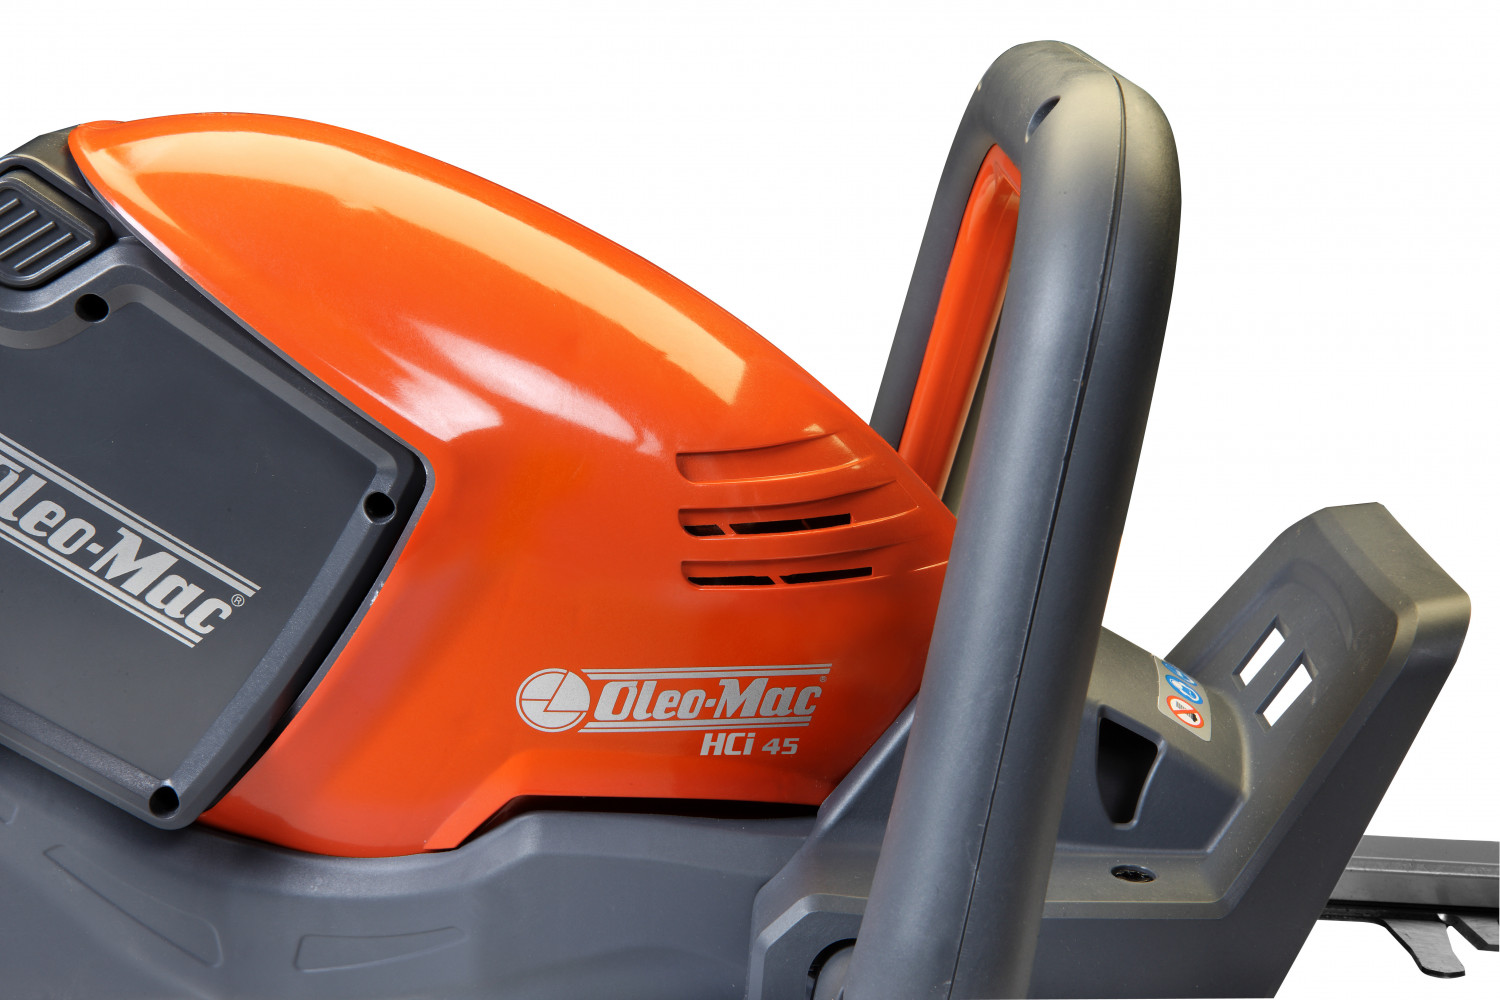 Oleo-Mac HCI 45 - Wysoka ergonomia pracy została uzyskana dzięki niskiej wadze urządzenia oraz doskonałemu wyważeniu